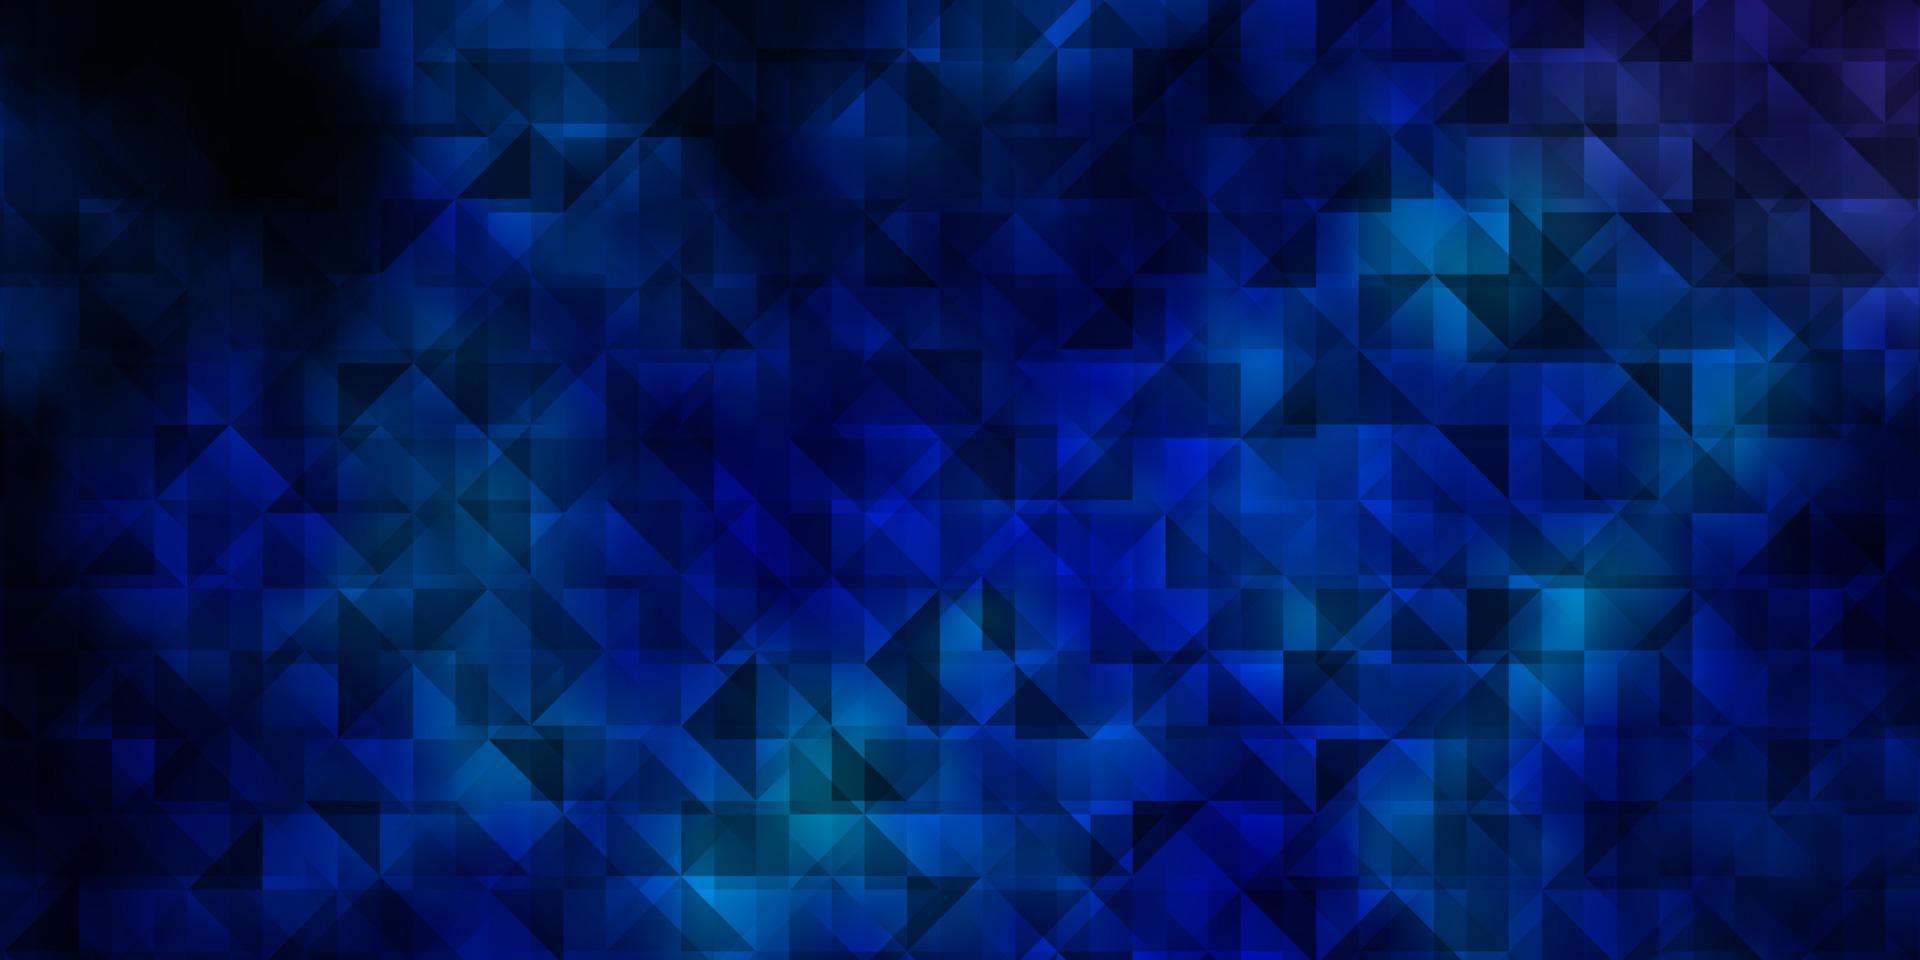 mörkrosa, blå vektormall med kristaller, trianglar. vektor